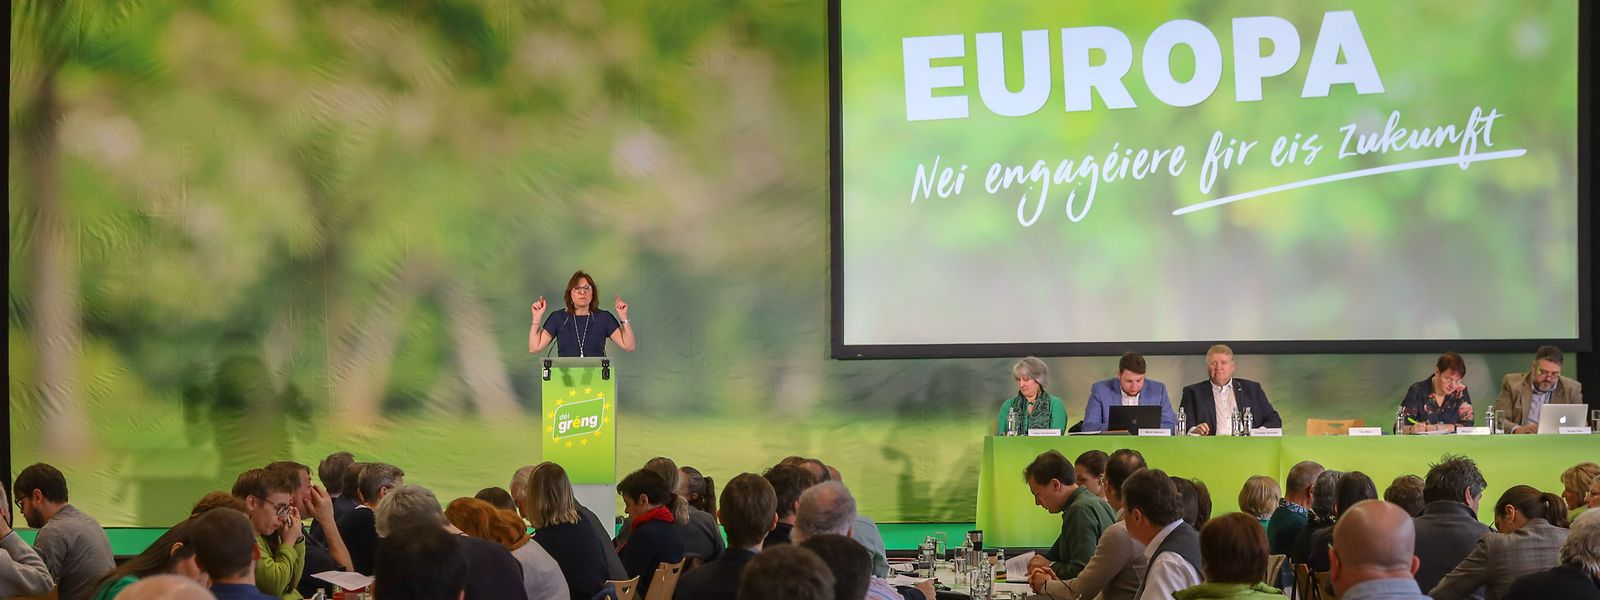 Spitzenkandidatin für die Europawahlen, Tilly Metz, hält eine Rede beim Europawahlkongress der Grünen. 